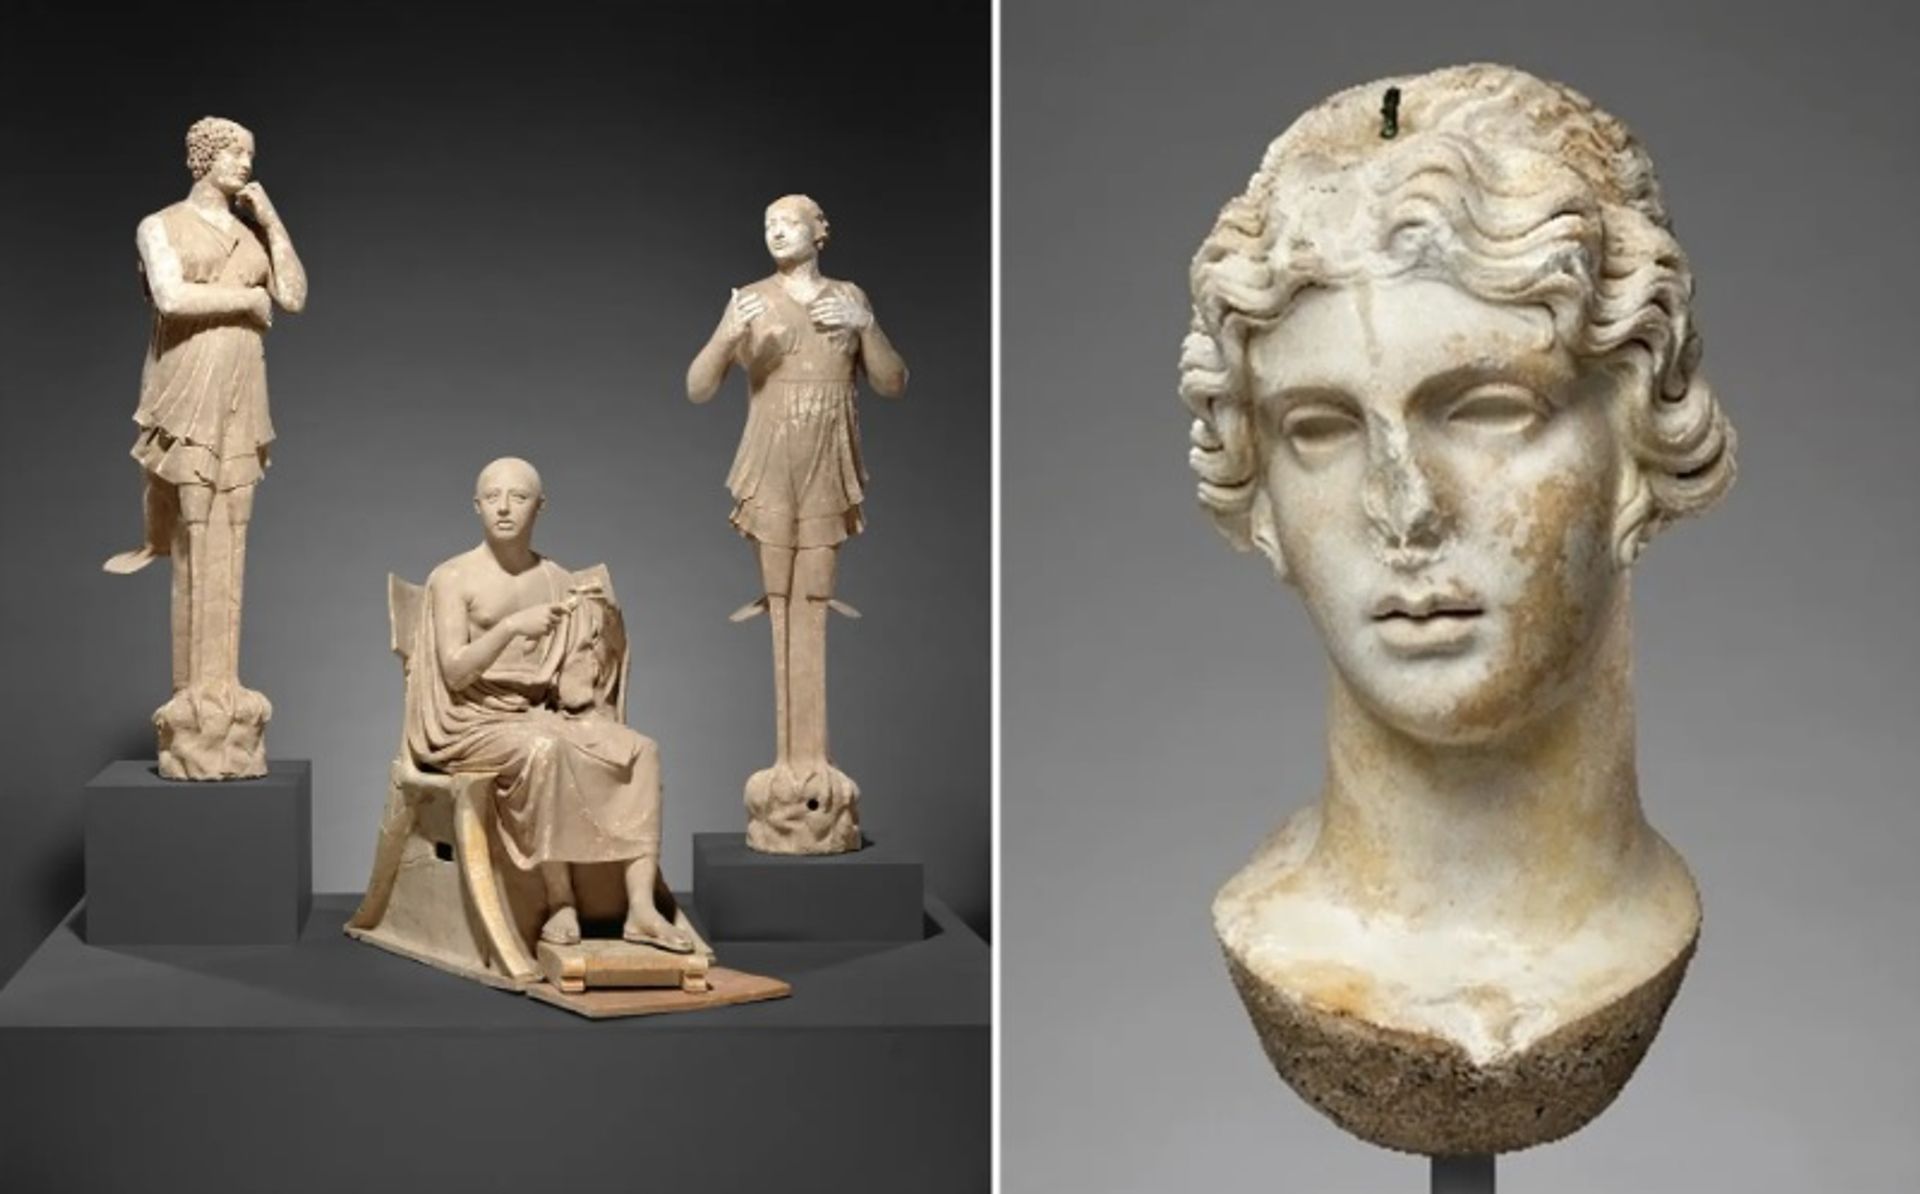 משמאל: קבוצת פסלים של משורר יושב וסירנות עם תלתלים וקונכיות, מ-350-300 לפני הספירה; מימין: ראש ענק של אלה, מהמאה ה-2 לספירה

באדיבות מוזיאון ג'יי פול גטי, לוס אנג'לס